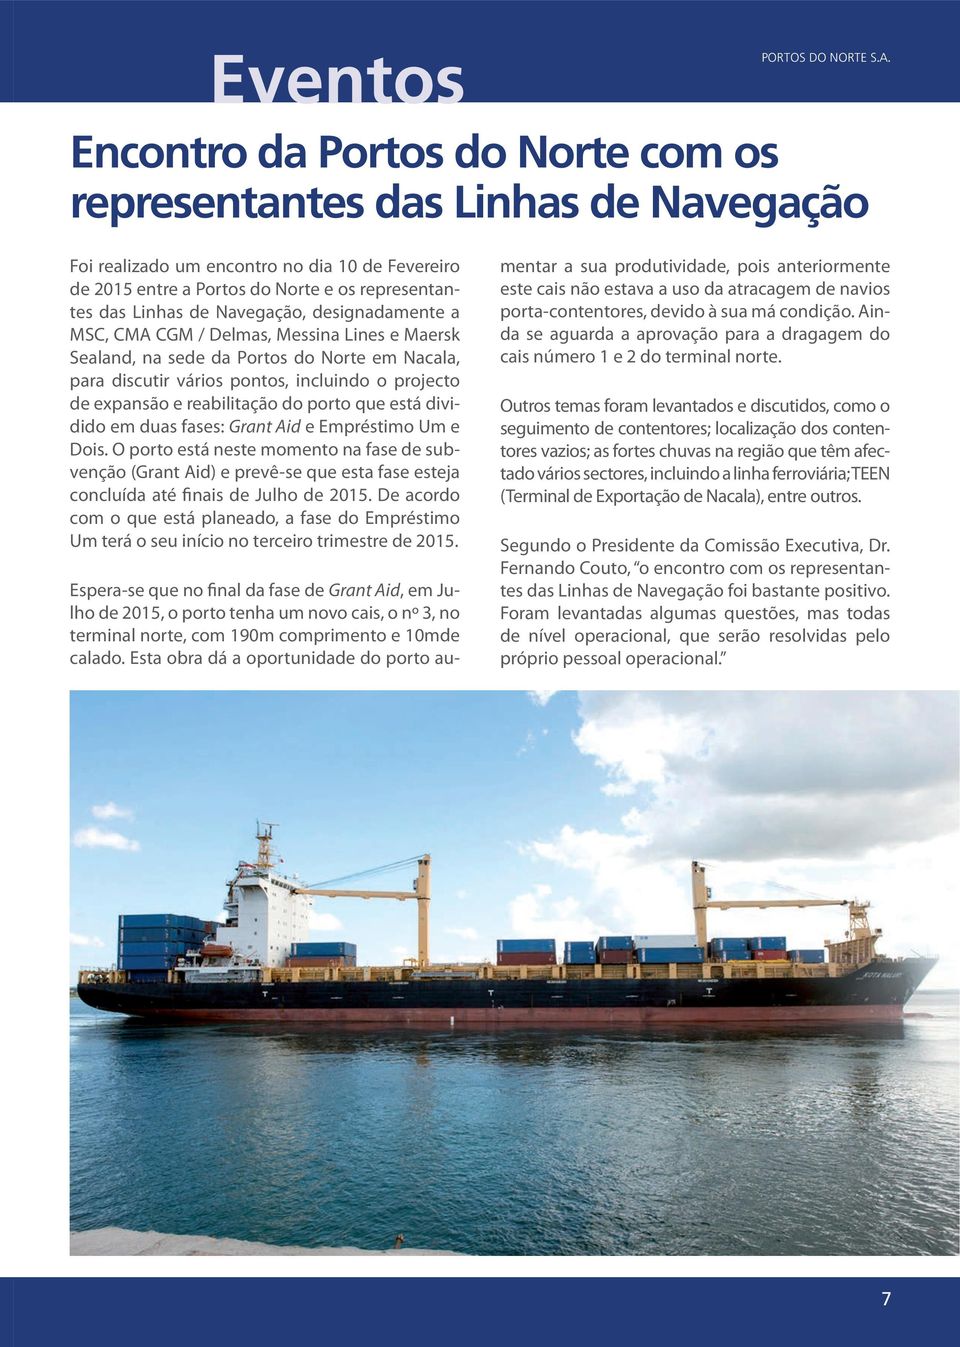 designadamente a MSC, CMA CGM / Delmas, Messina Lines e Maersk Sealand, na sede da Portos do Norte em Nacala, para discutir vários pontos, incluindo o projecto de expansão e reabilitação do porto que